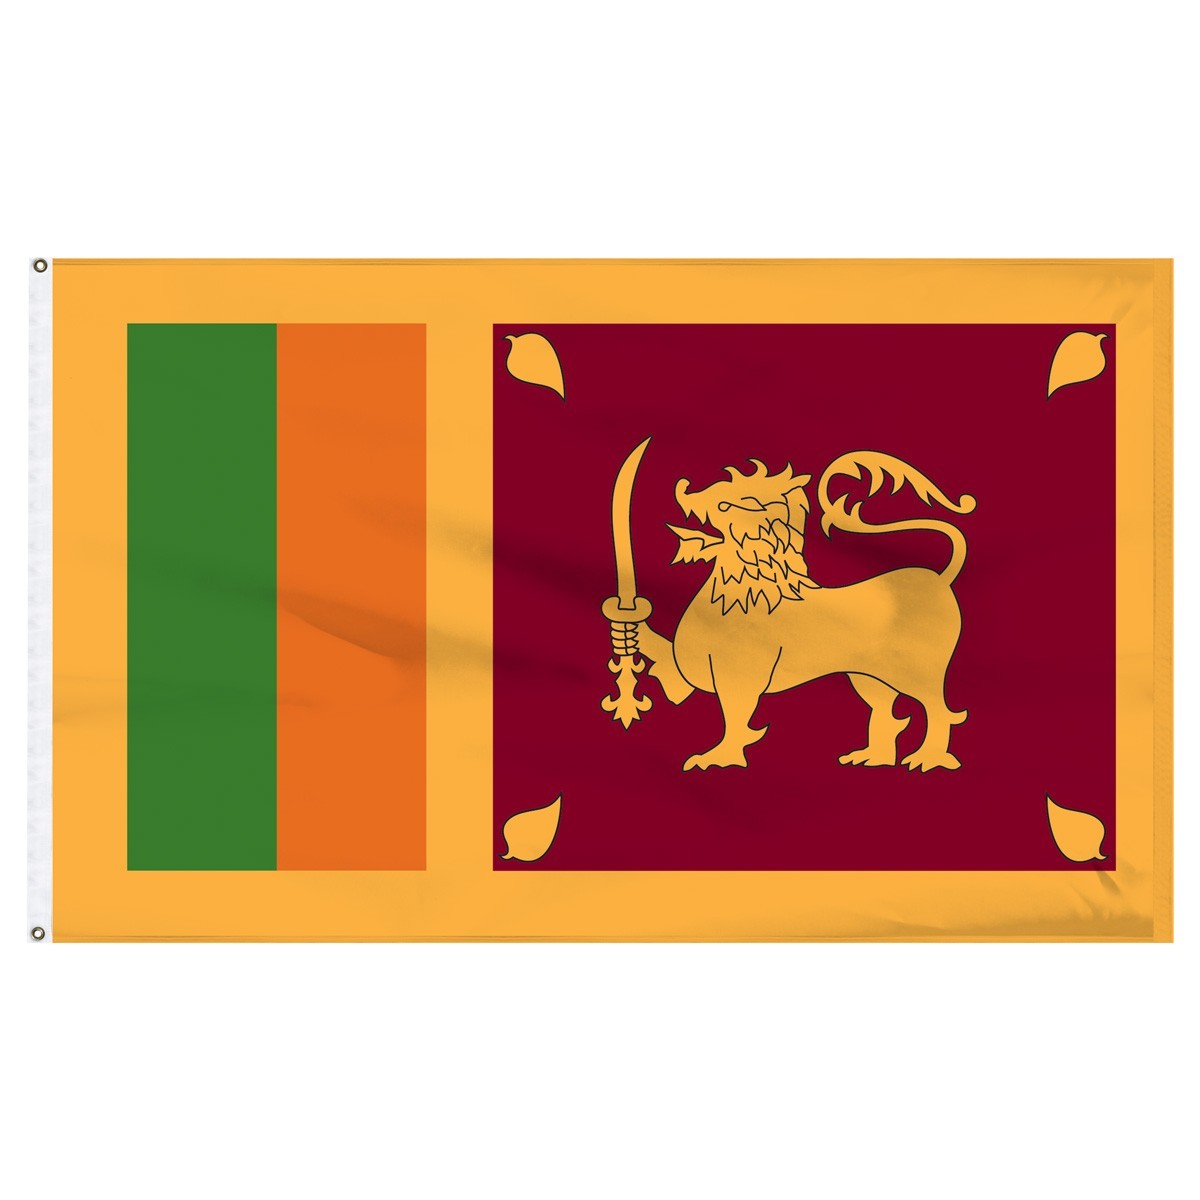 Sri Lanka 2ft x 3ft Outdoor Nylon Flag